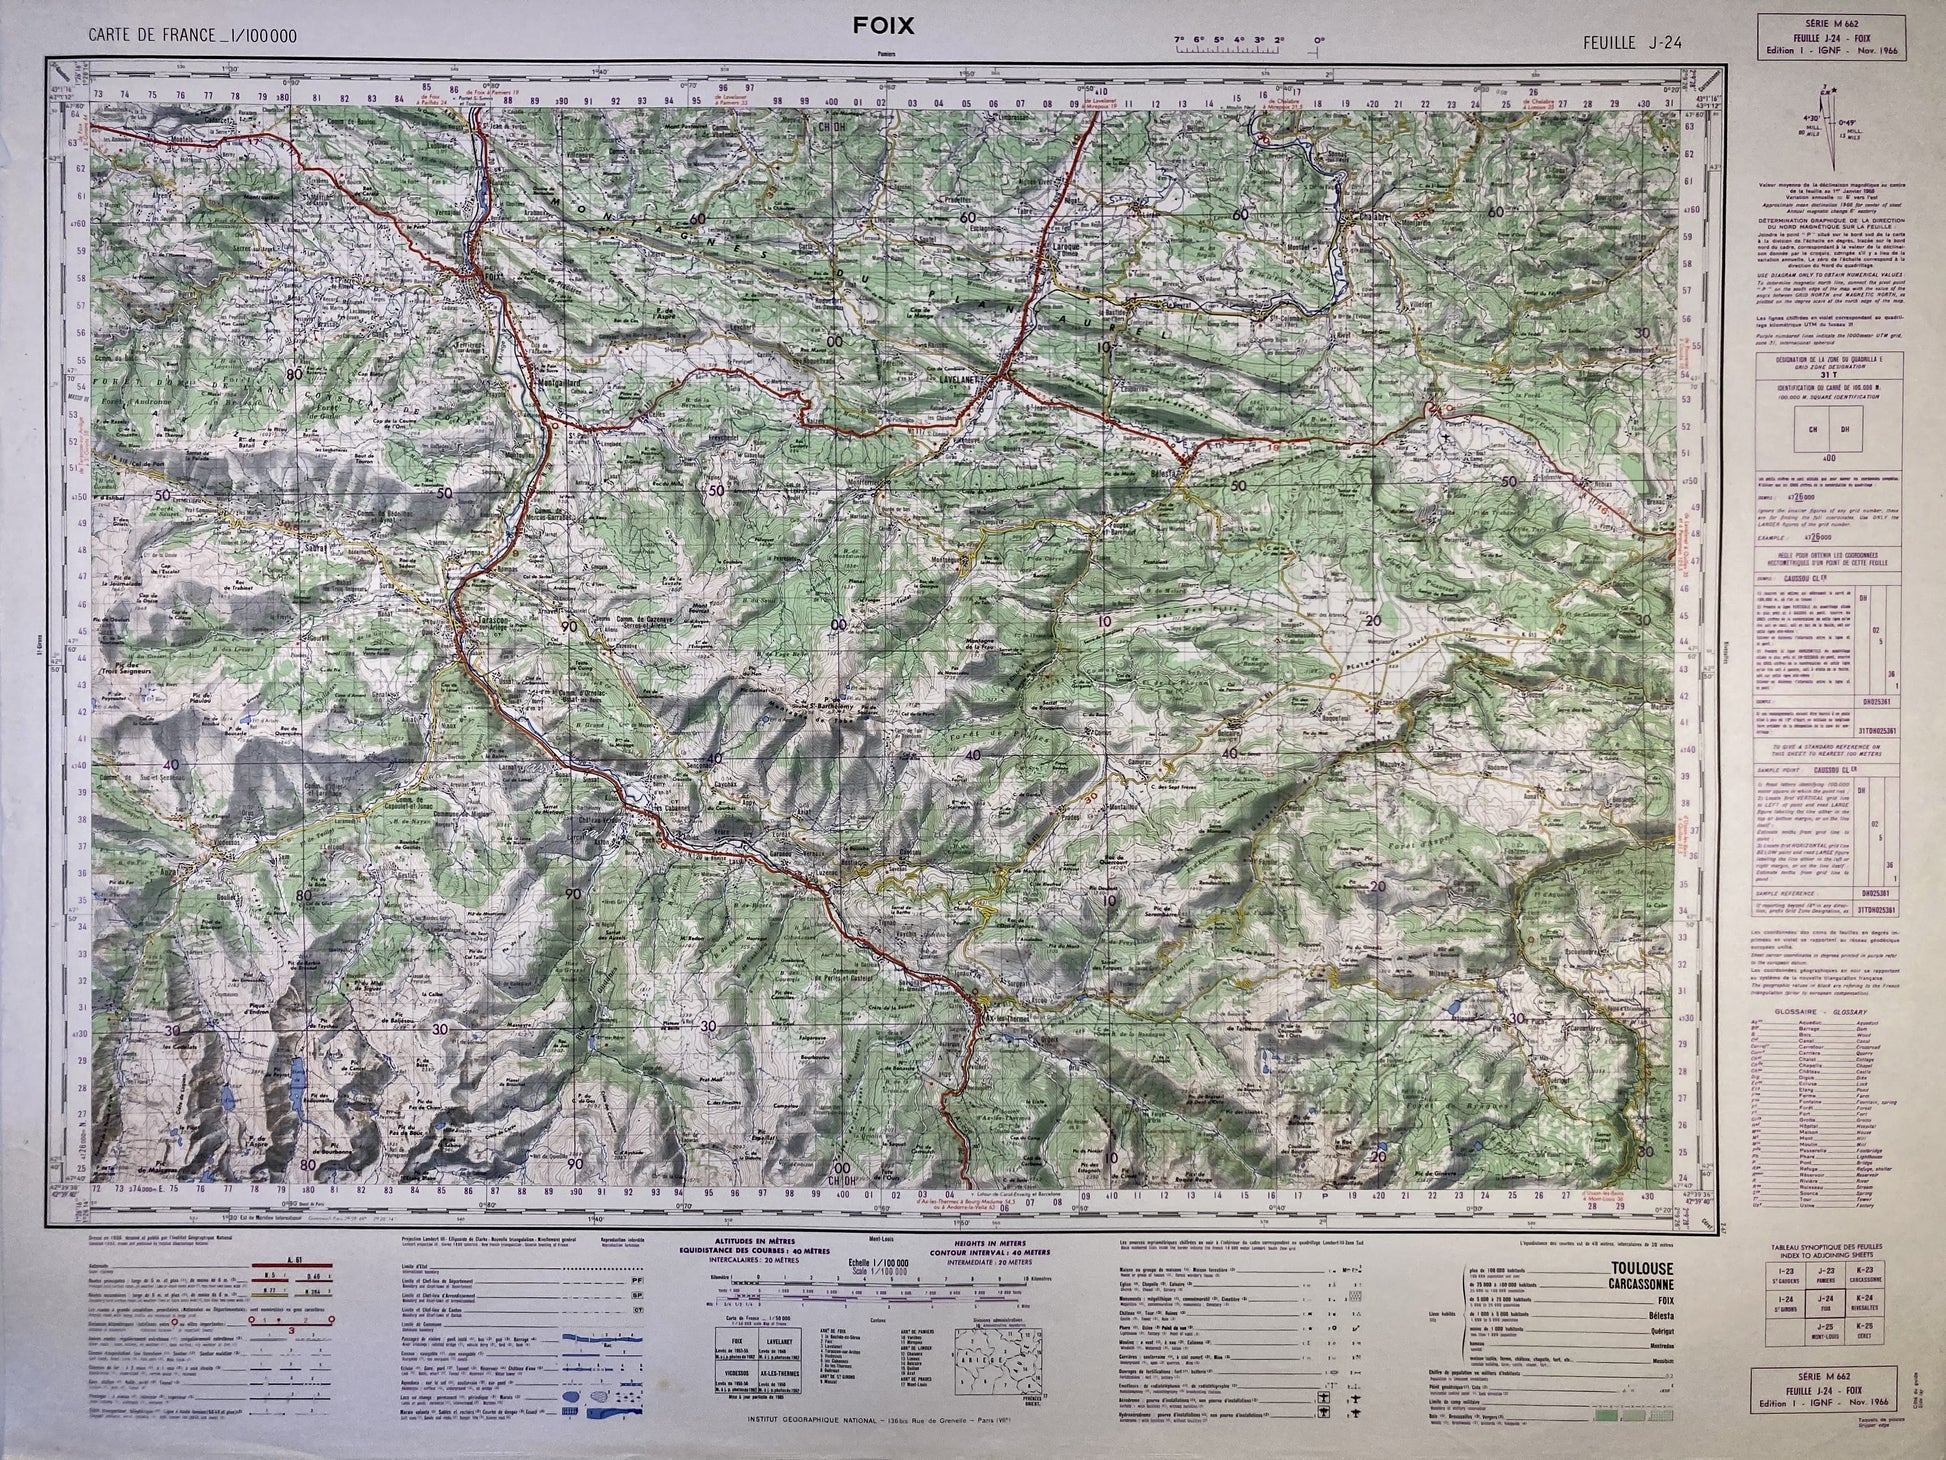 Carte IGN ancienne de Foix